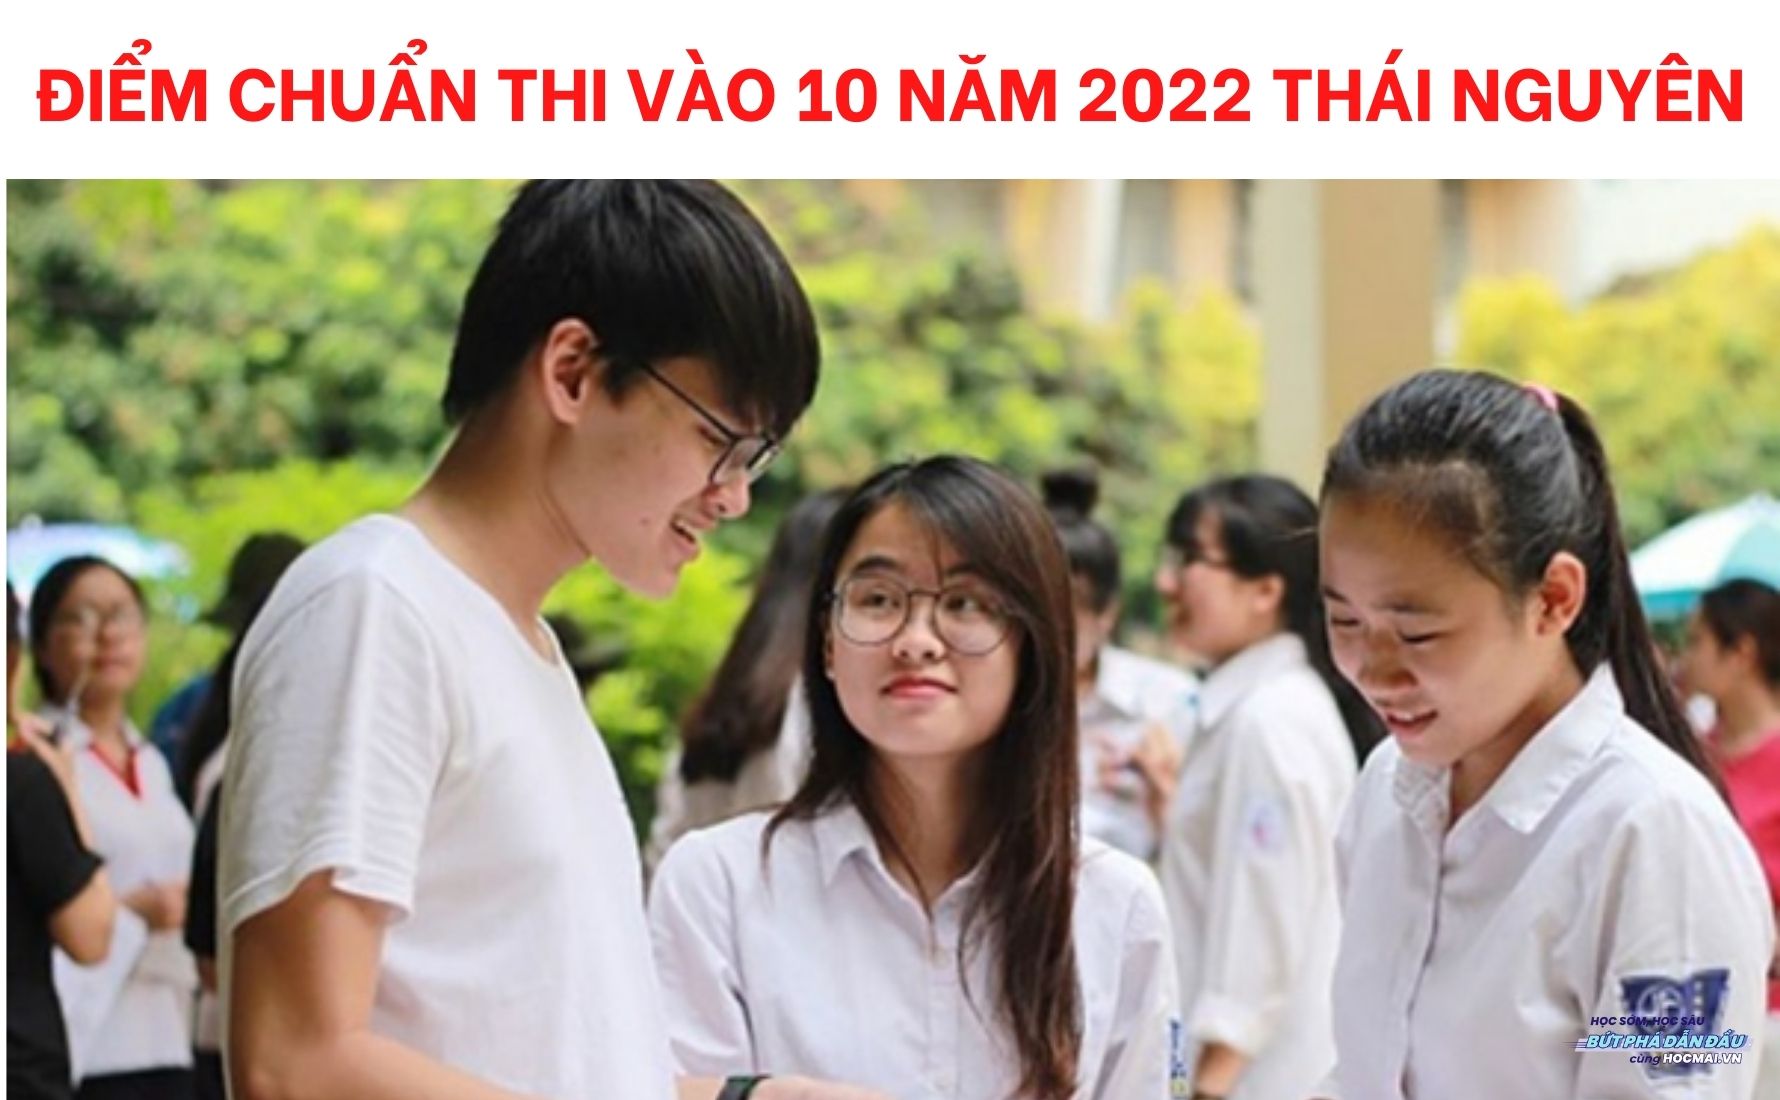 Điểm chuẩn lớp 10 chuyên Thái Nguyên năm nay là bao nhiêu?
